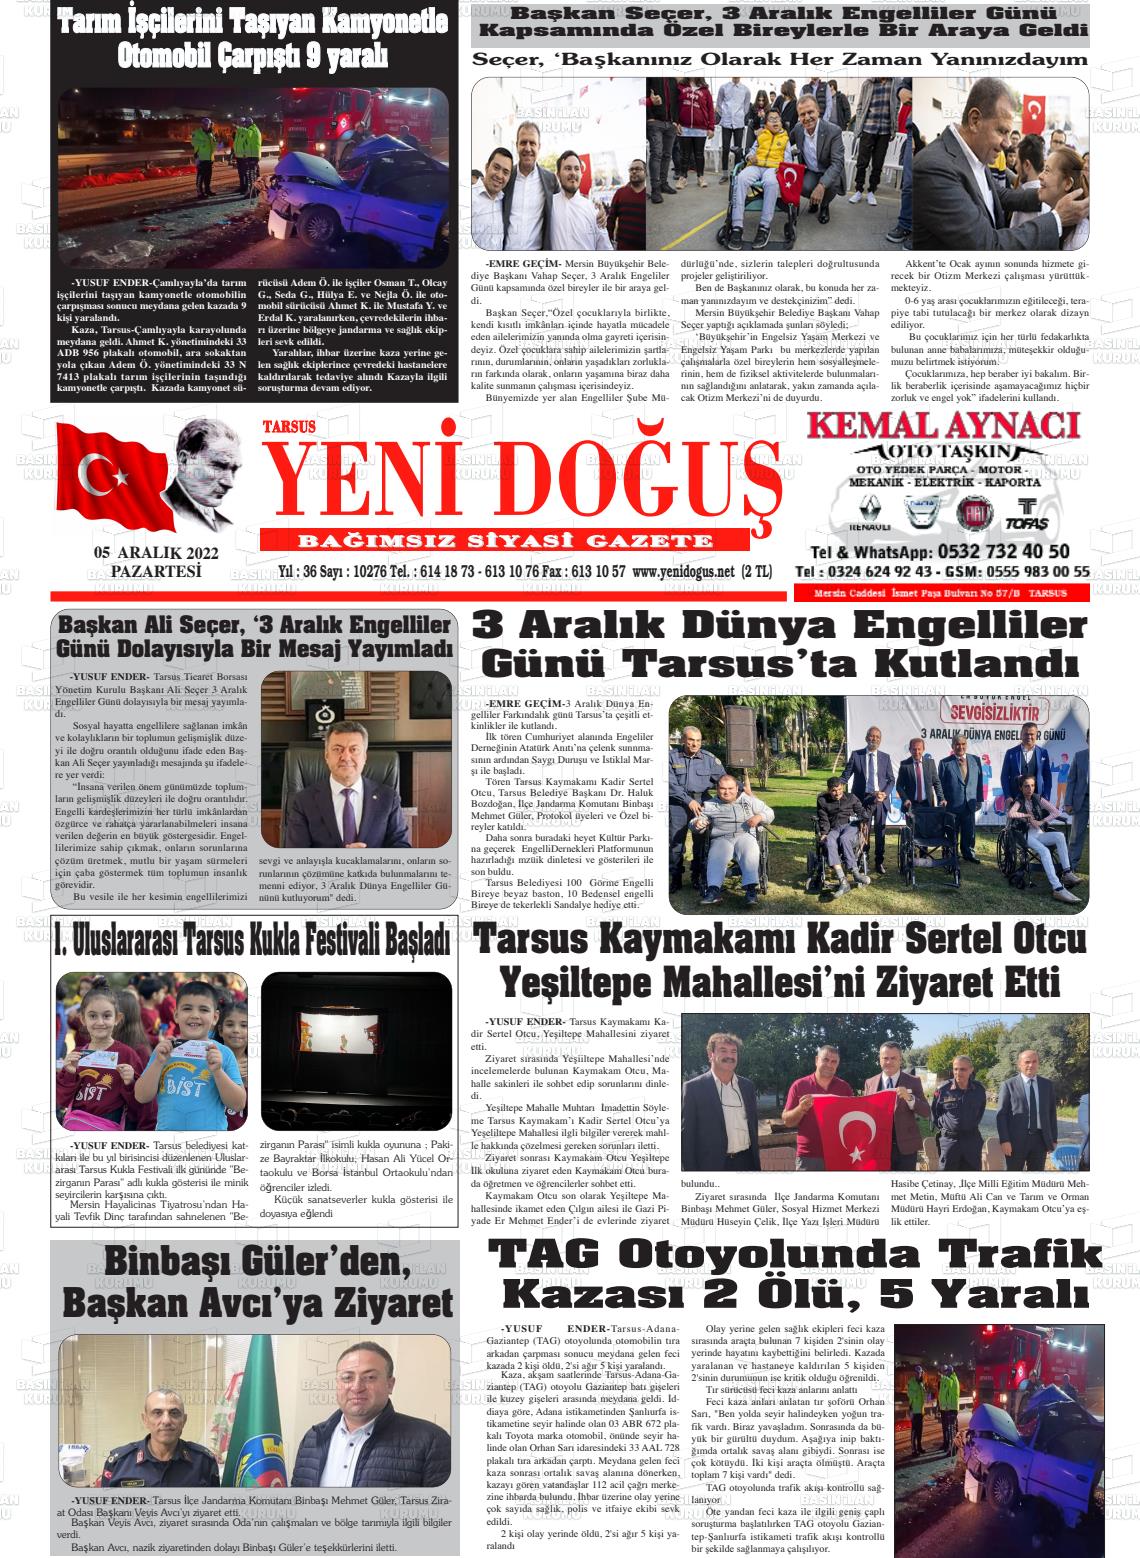 05 Aralık 2022 Tarsus Yeni Doğuş Gazete Manşeti